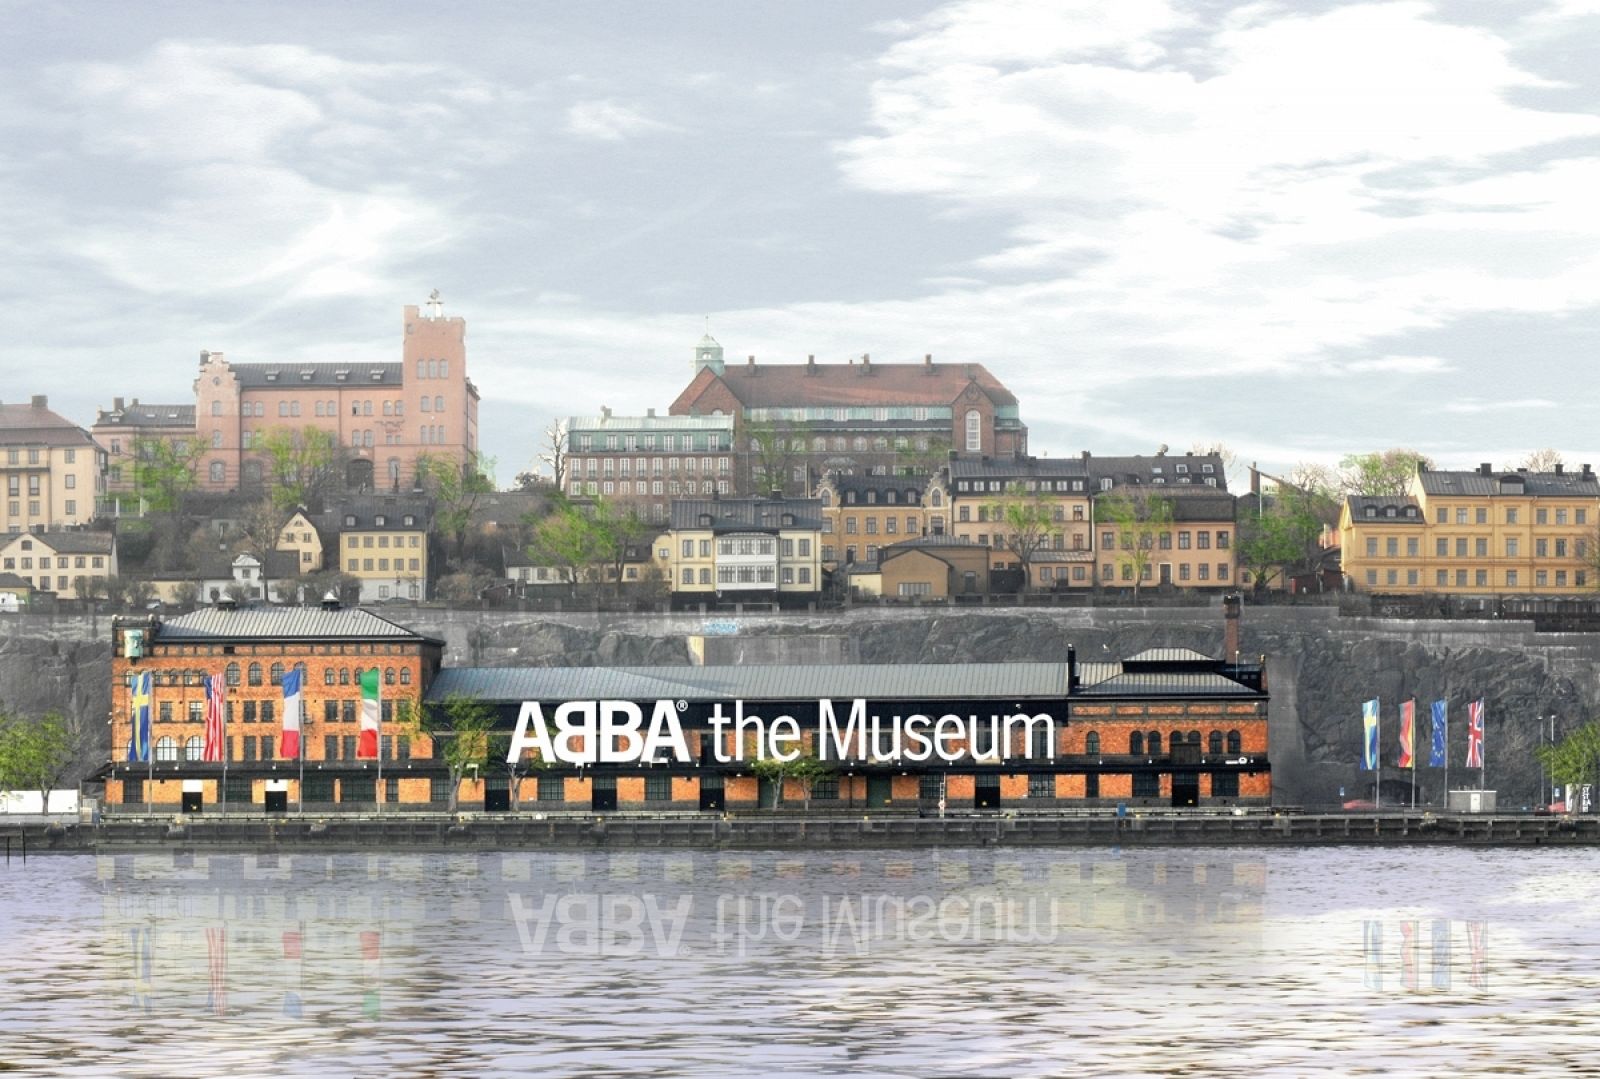 El Museo Abba ha abierto sus puertas en Estocolmo, Suecia.